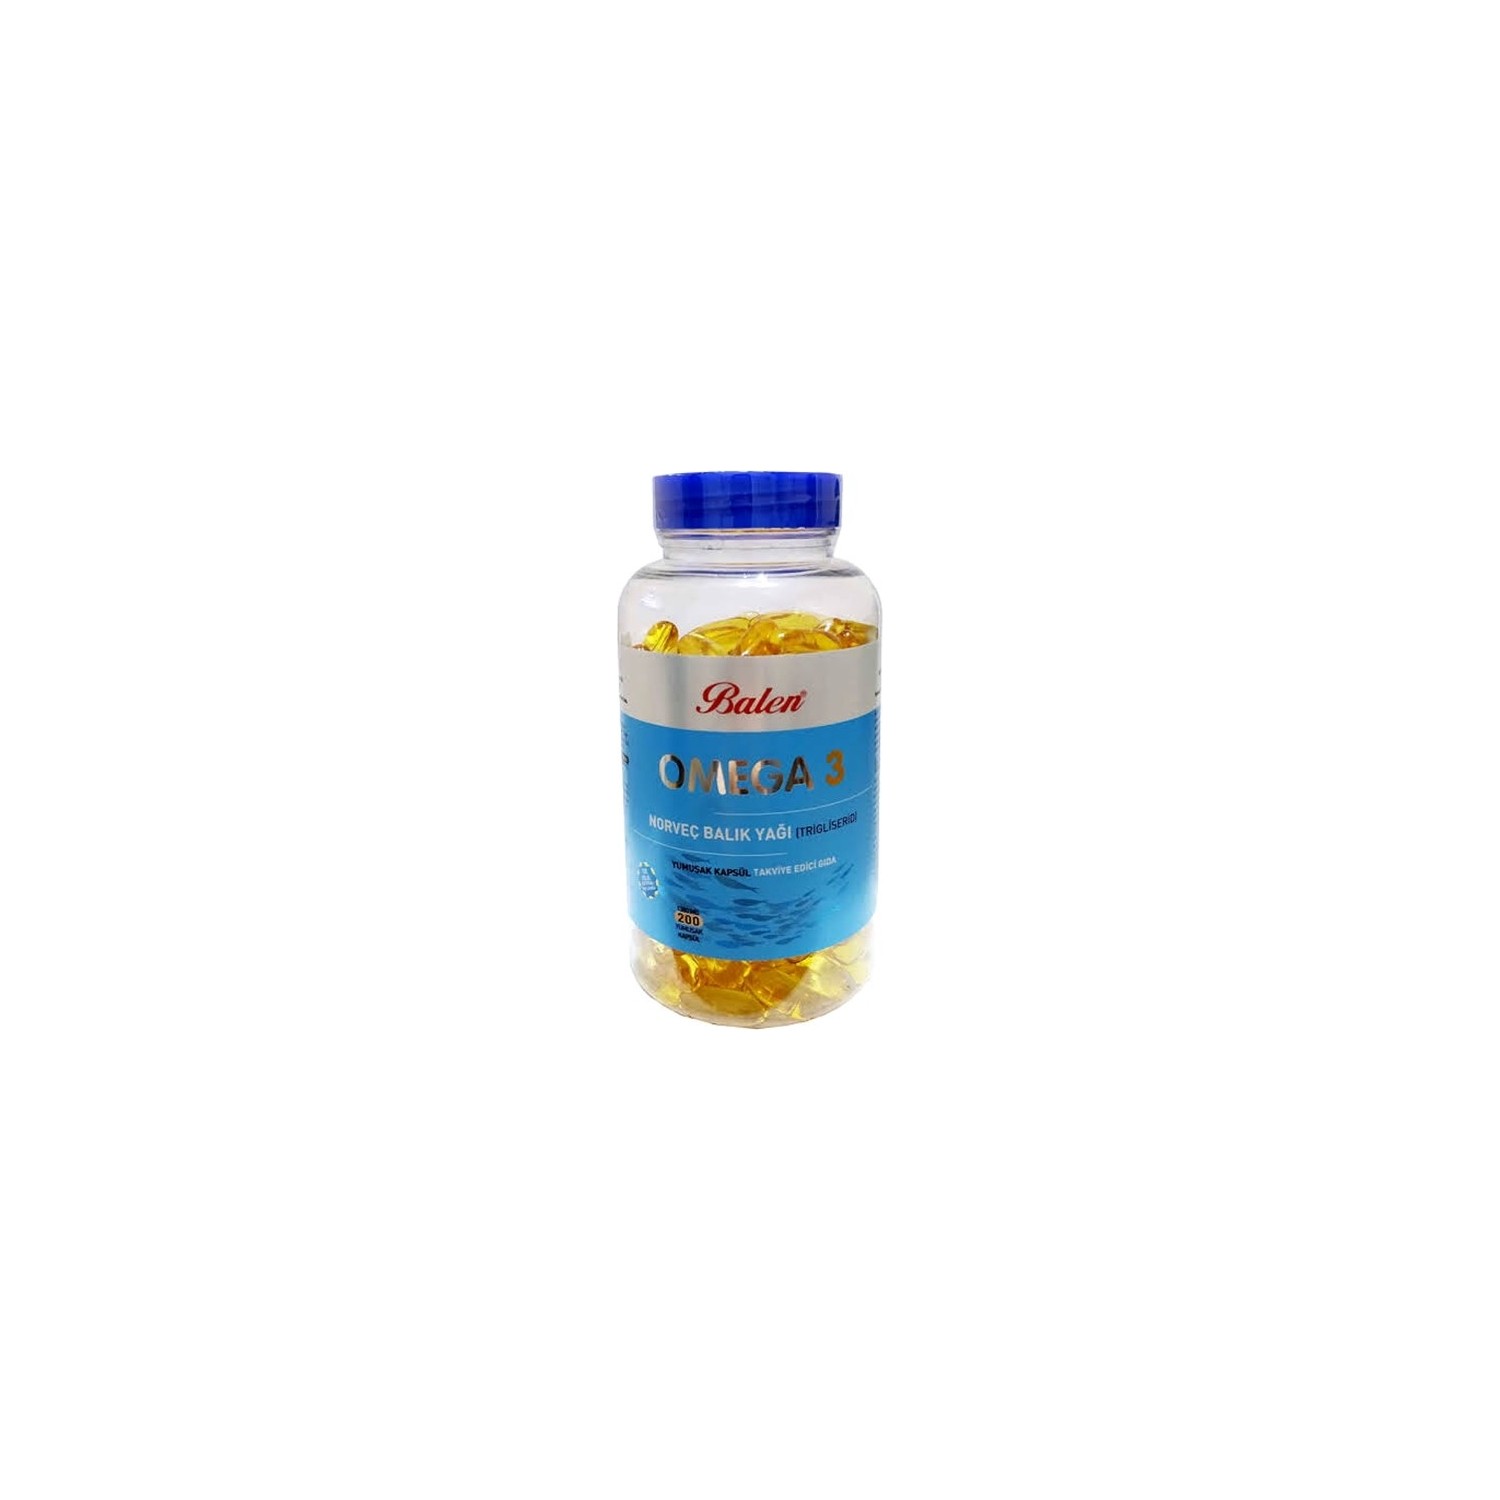 Норвежский рыбий жир Balen Omega-3 (триглицерид) 1380 мг, 200 капсул цена и фото